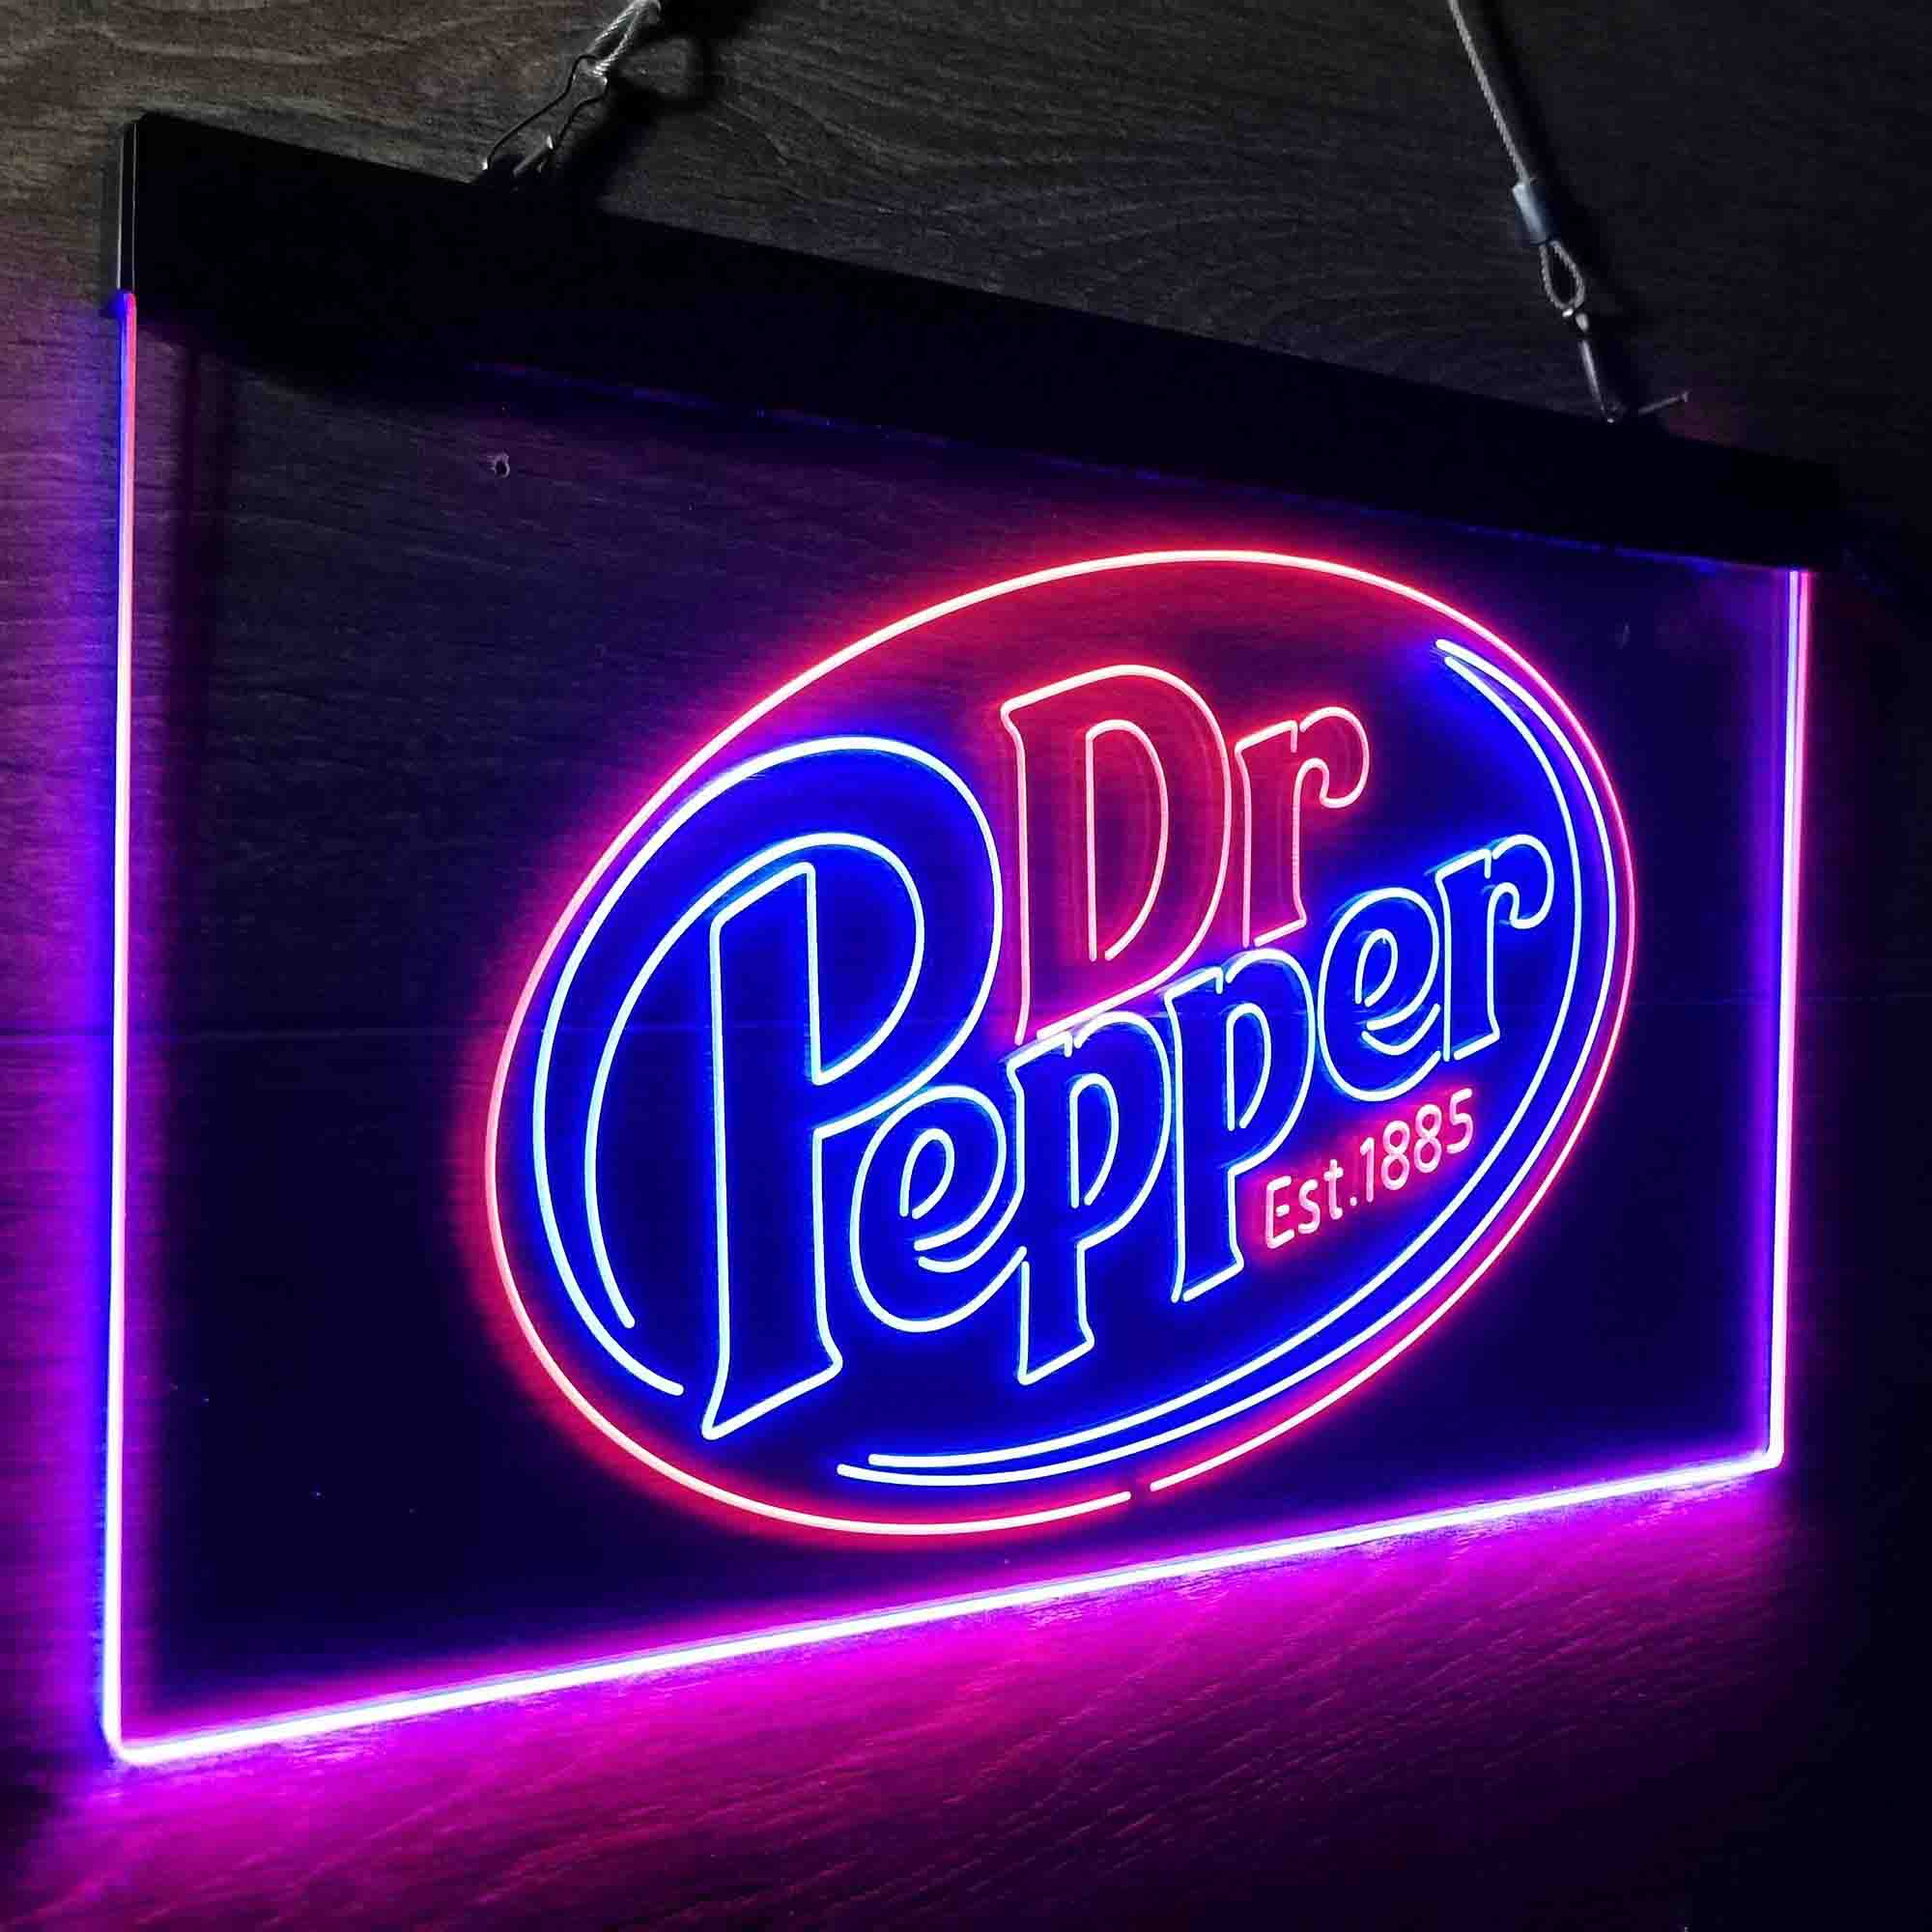 Dr Pepper Bar Est 1885 Neon LED Sign